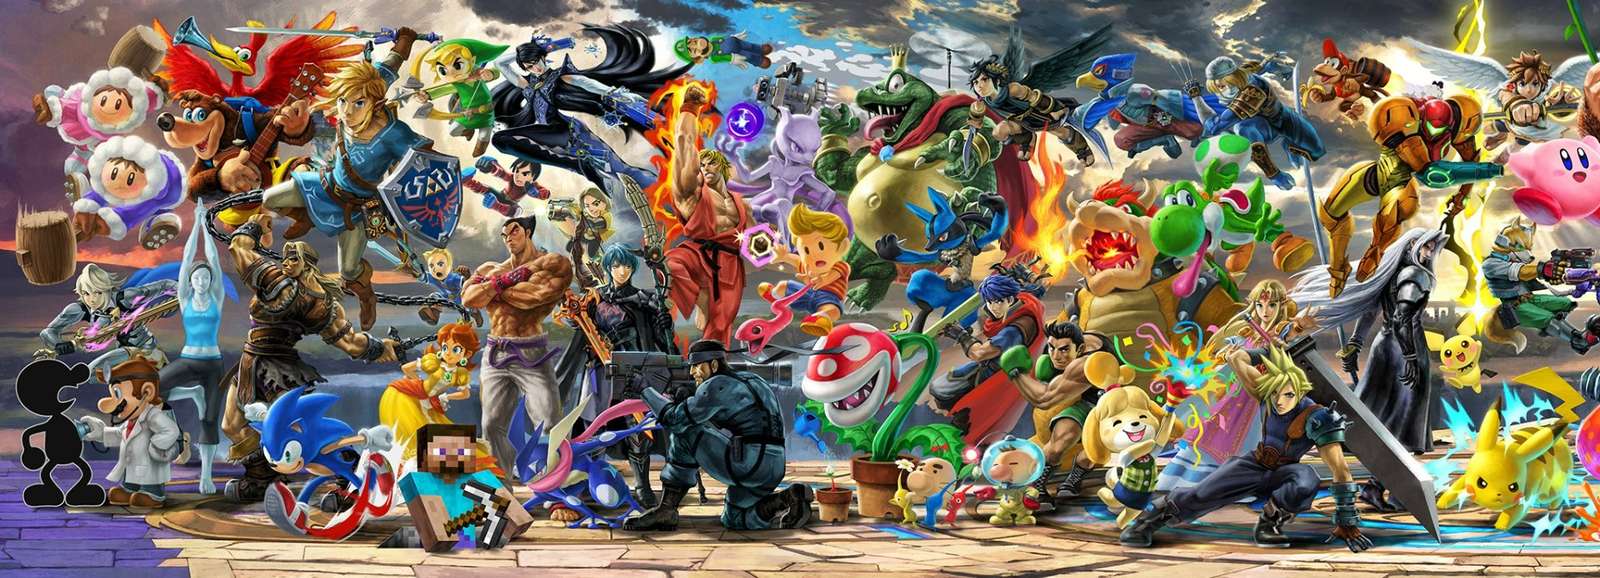 Super Smash Bros Ultimate väggmålning, vänster halva pussel på nätet